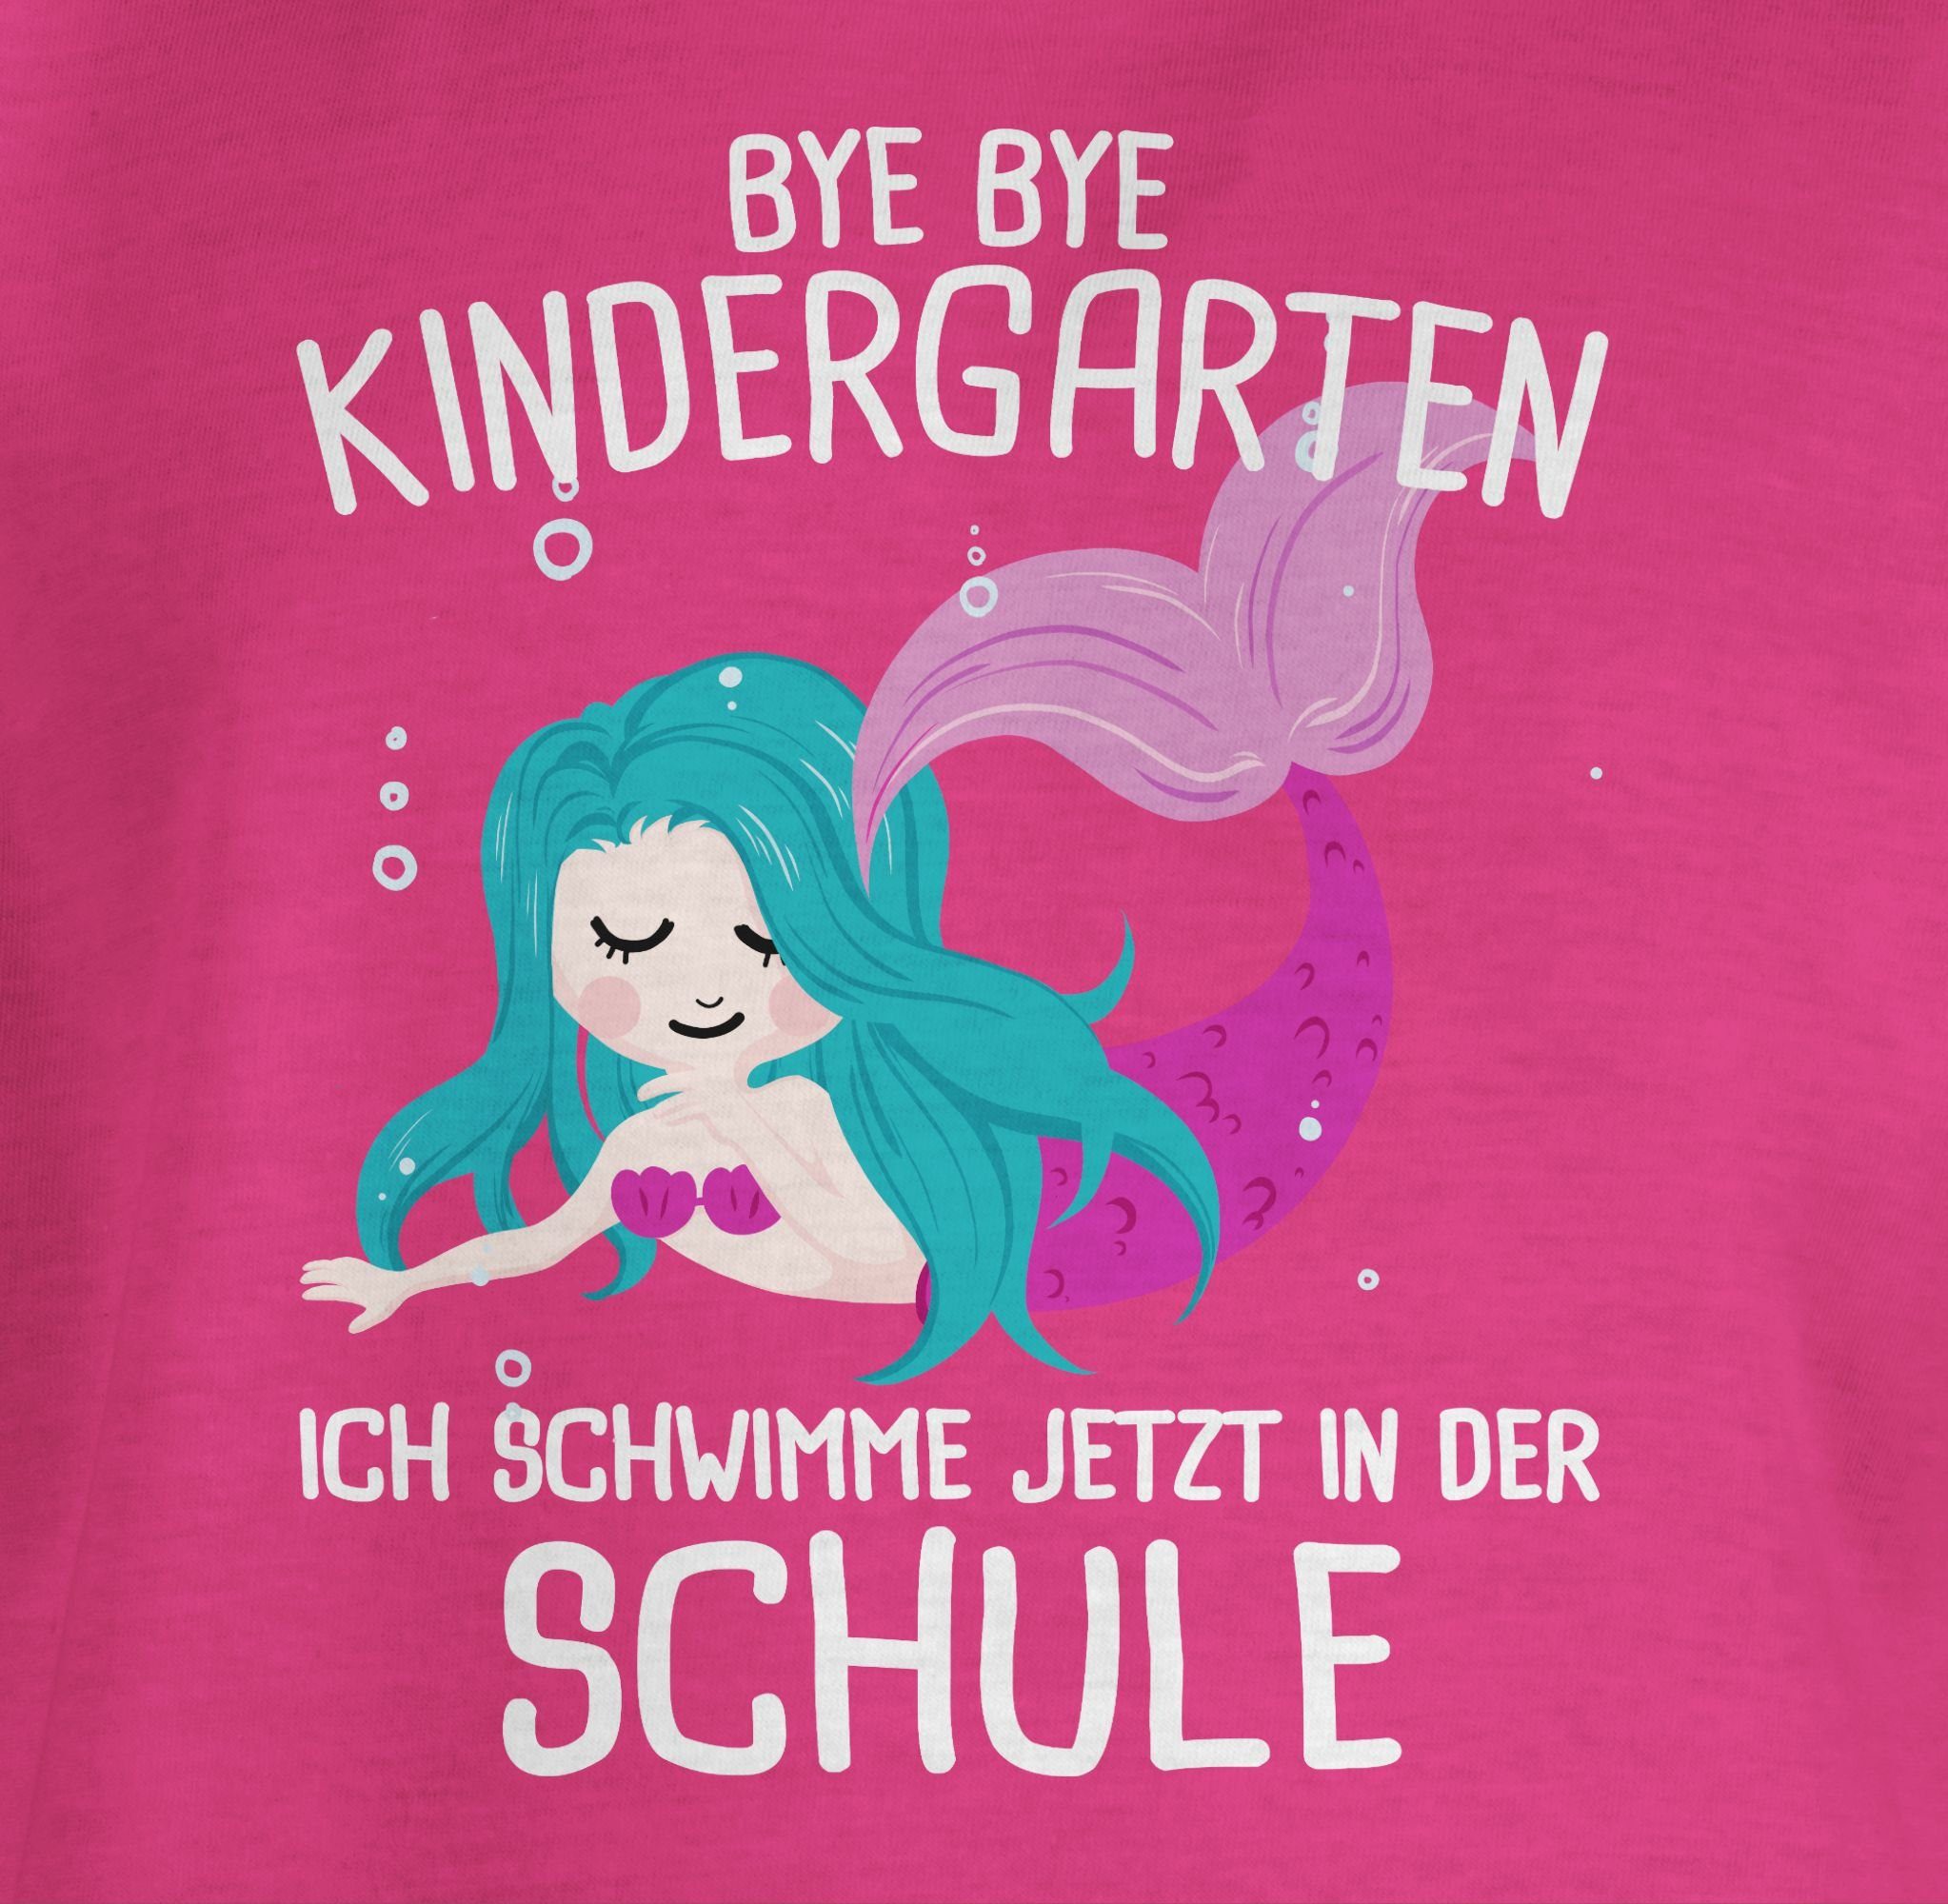 Shirtracer T-Shirt Bye Bye 1 in schwimme Fuchsia Schule Einschulung ich Mädchen Kindergarten jetzt der